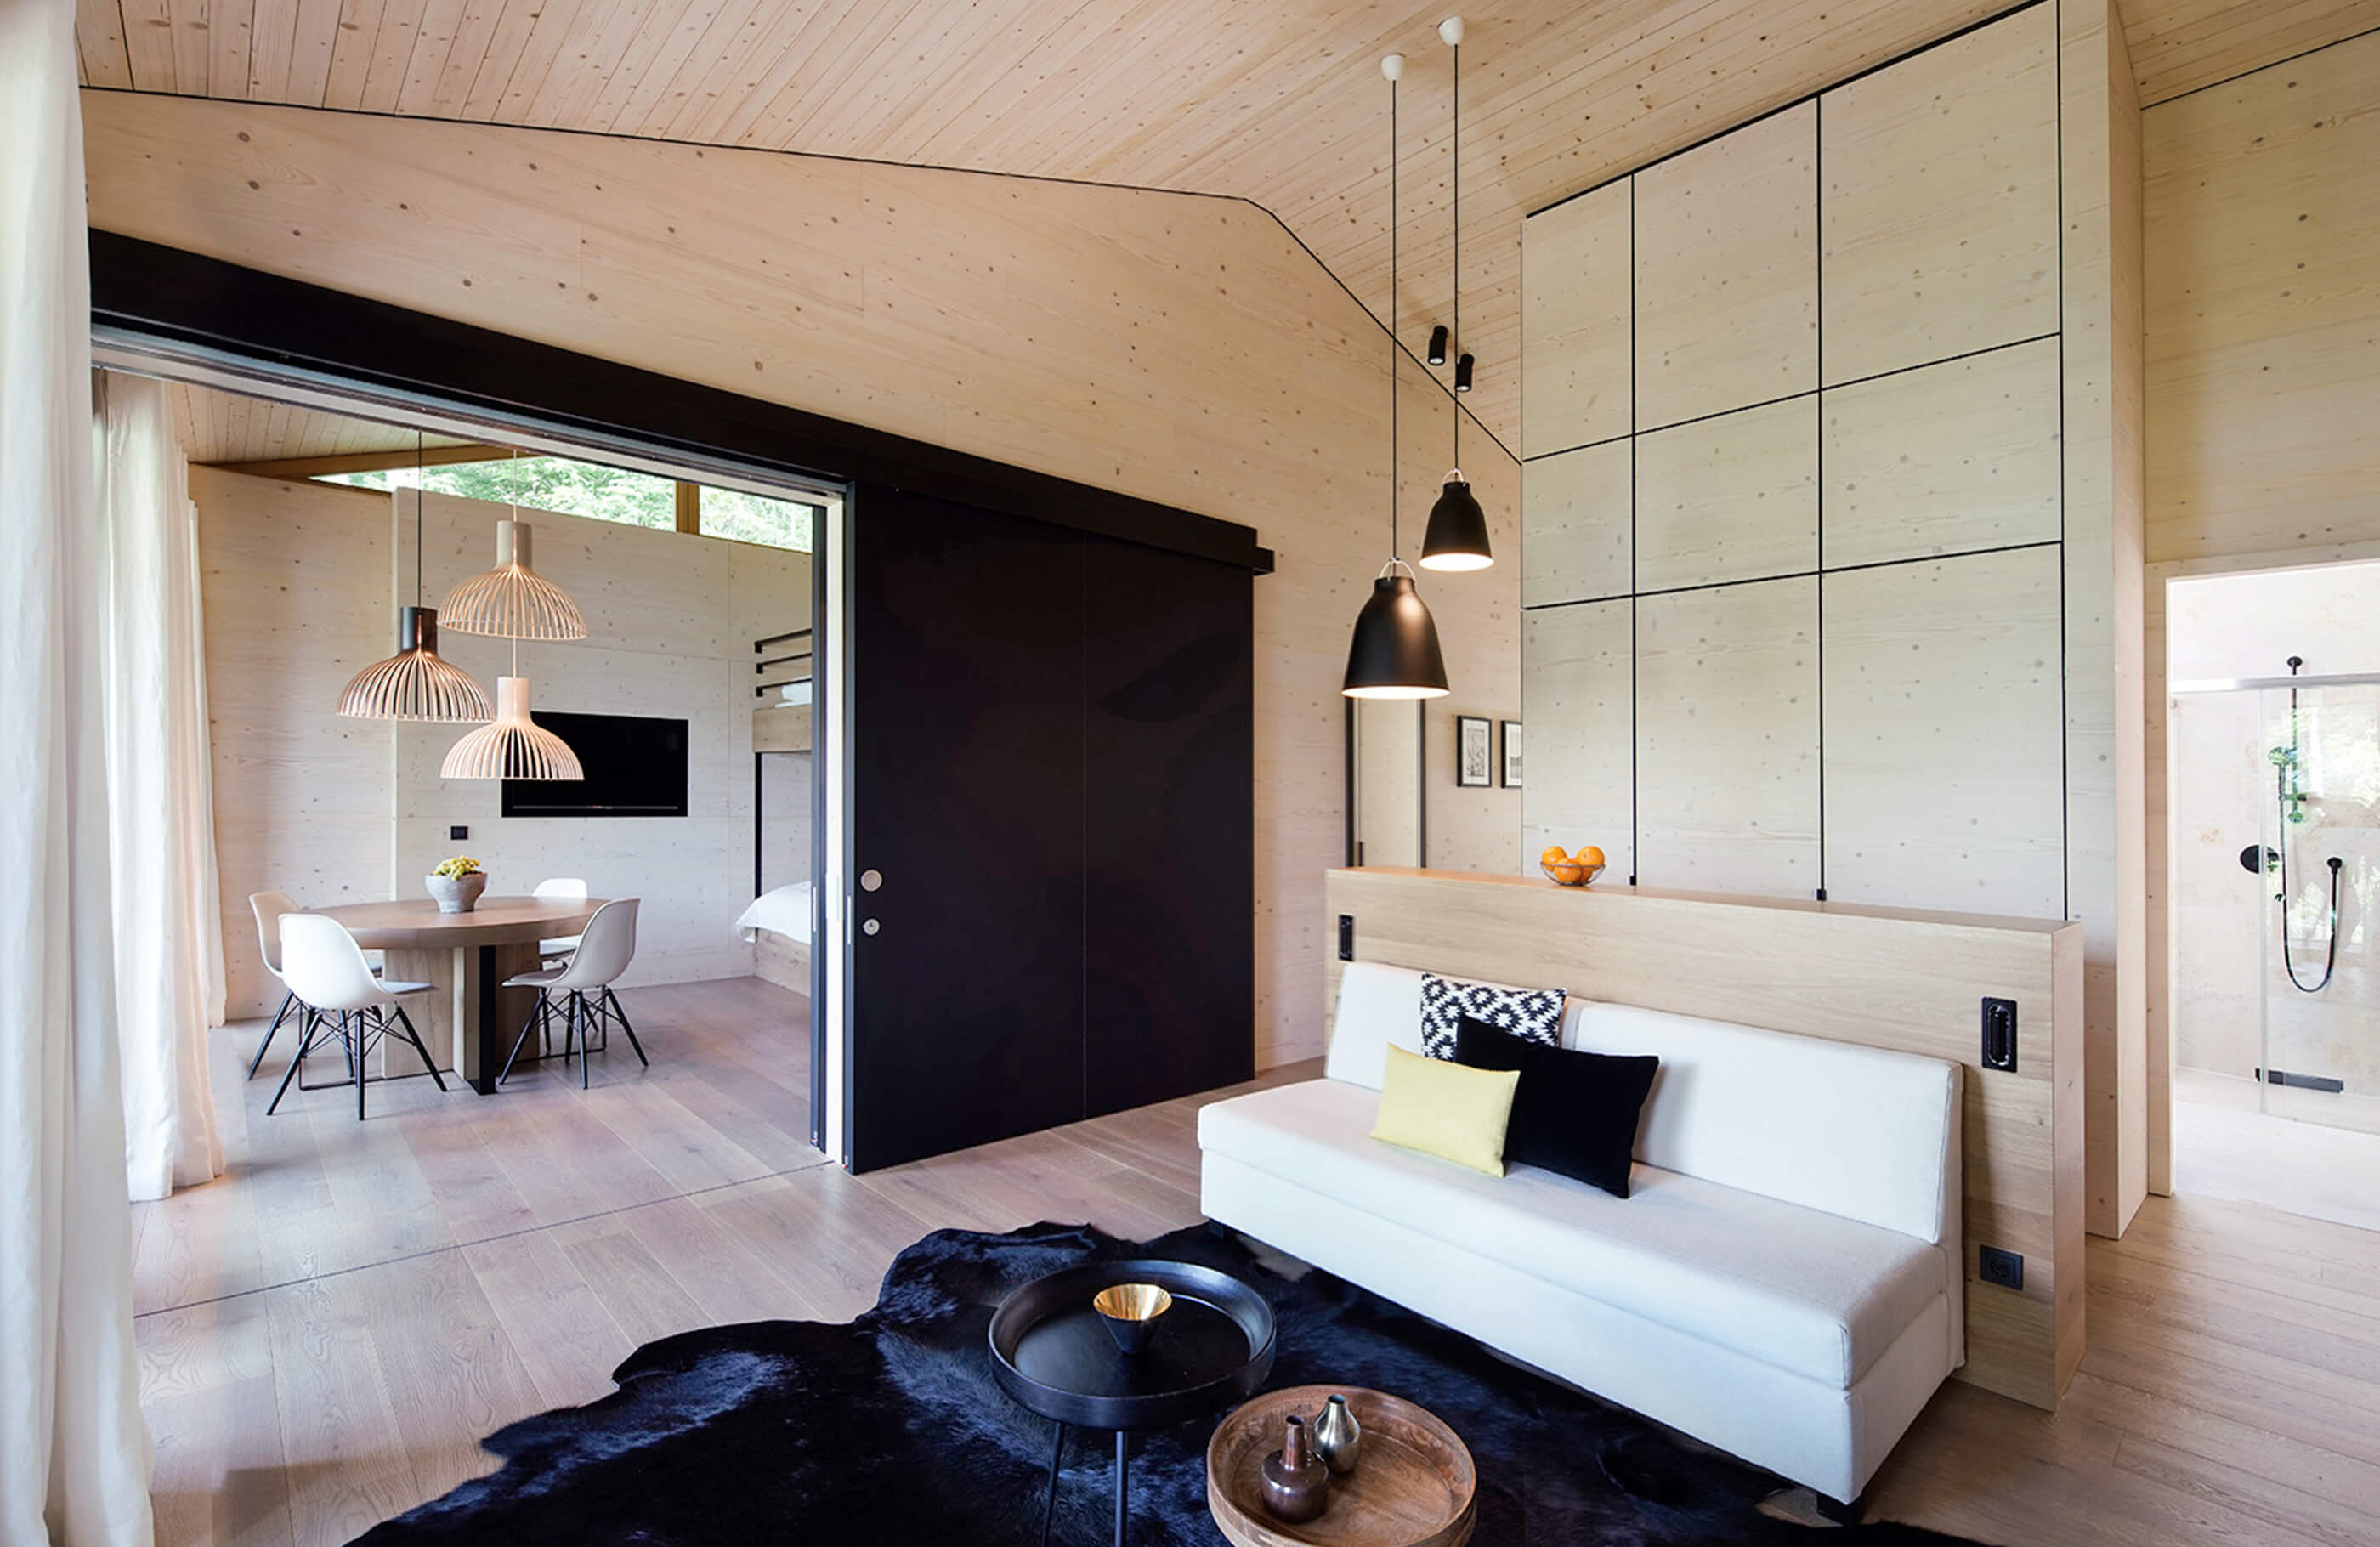 Aufnahme im Wohnraum des Alpenchalets am Tegernsee mit einem schwarzen Teppich, weißem Sofa und Blick ins angrenzende Zimmer mit einem Essbereich bestehend aus einem runden Holztisch und vier weißen Stühlen.